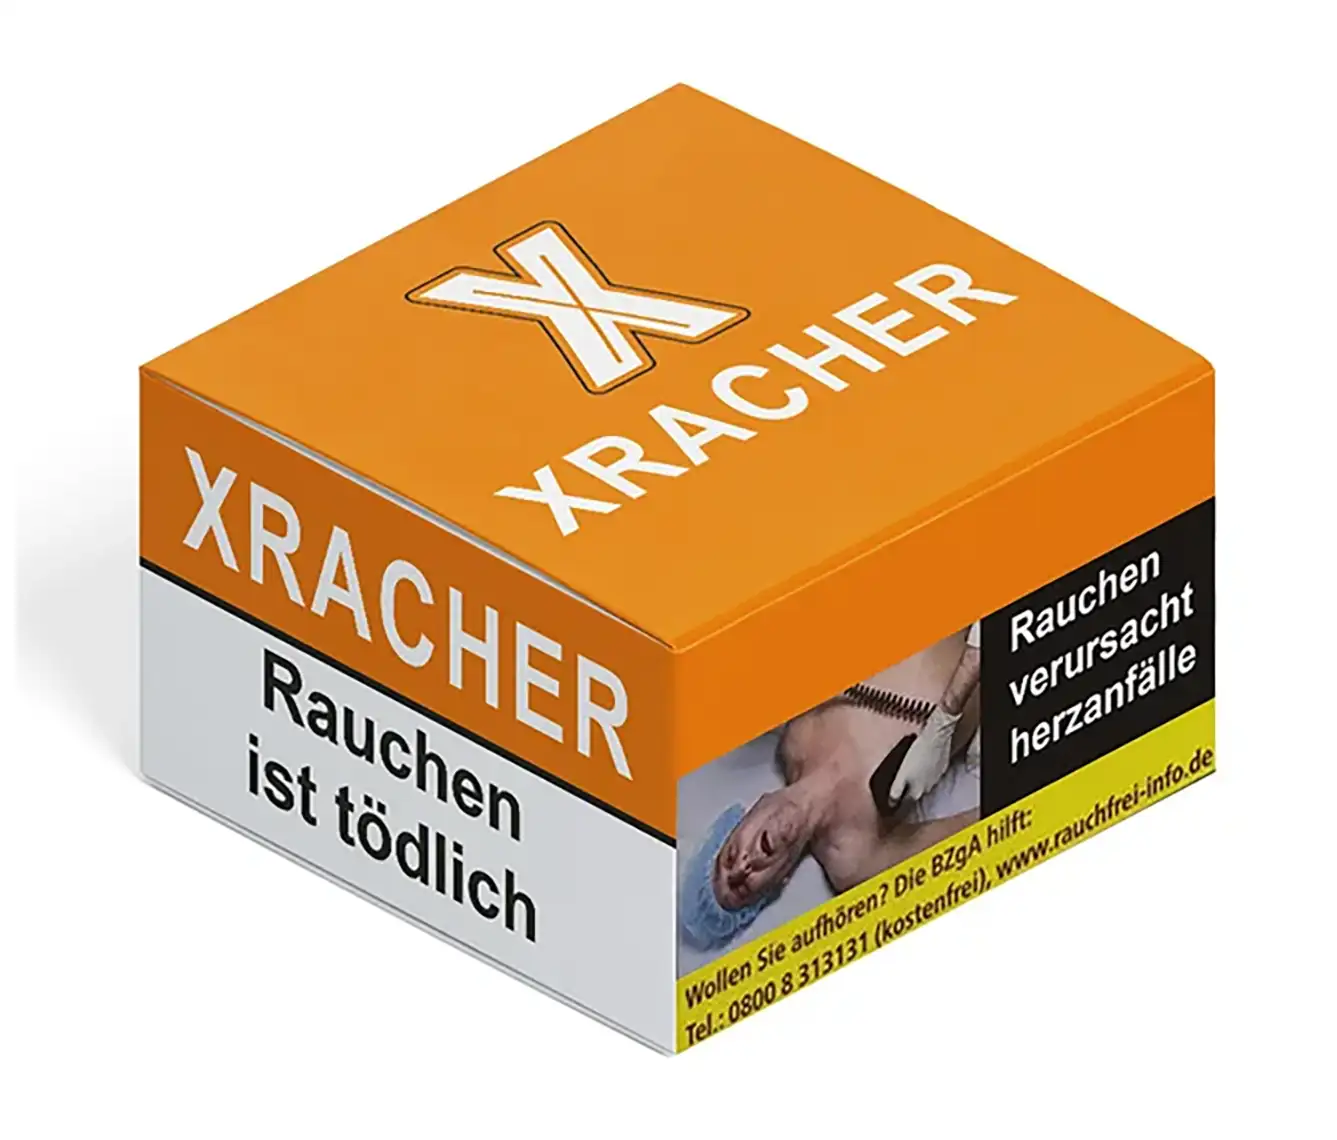 XRacher Tobacco P.F. 20g